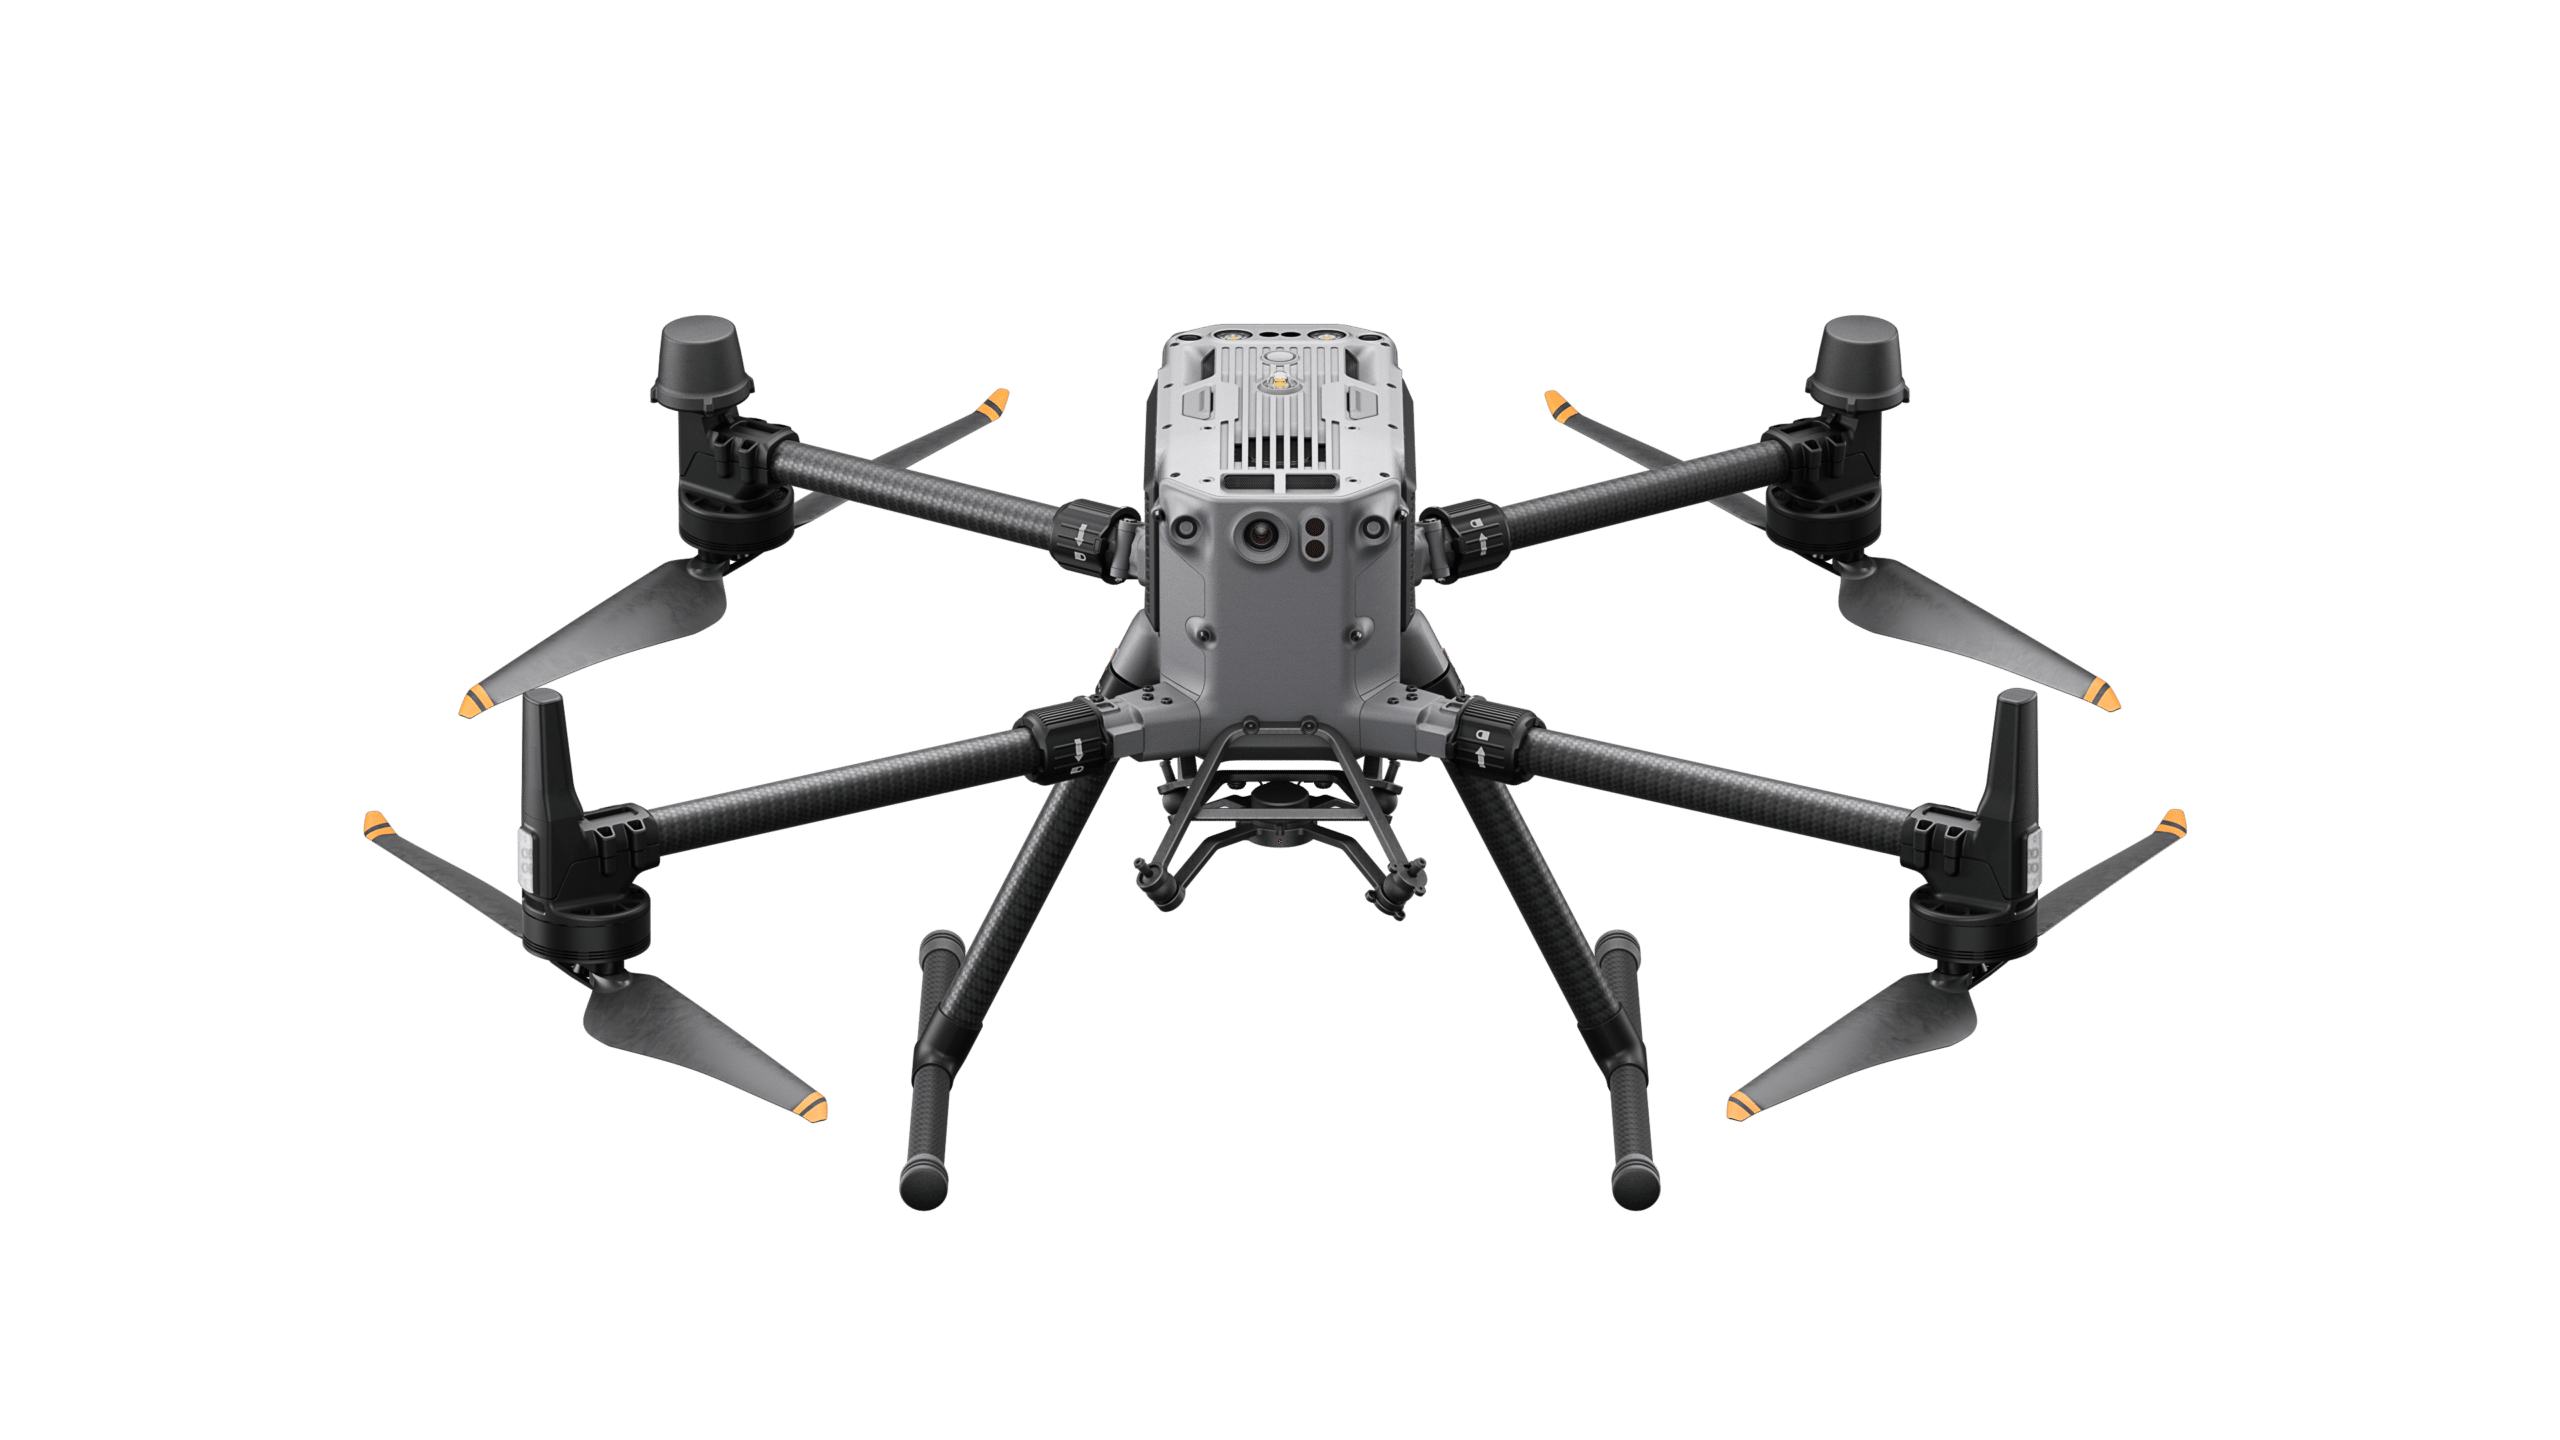 Die DJI Matrice M350 RTK ist speziell für Drohneneinsätze in der Industrie, öffentliche Sicherheit, Inspektion und Kartierung geeignet.